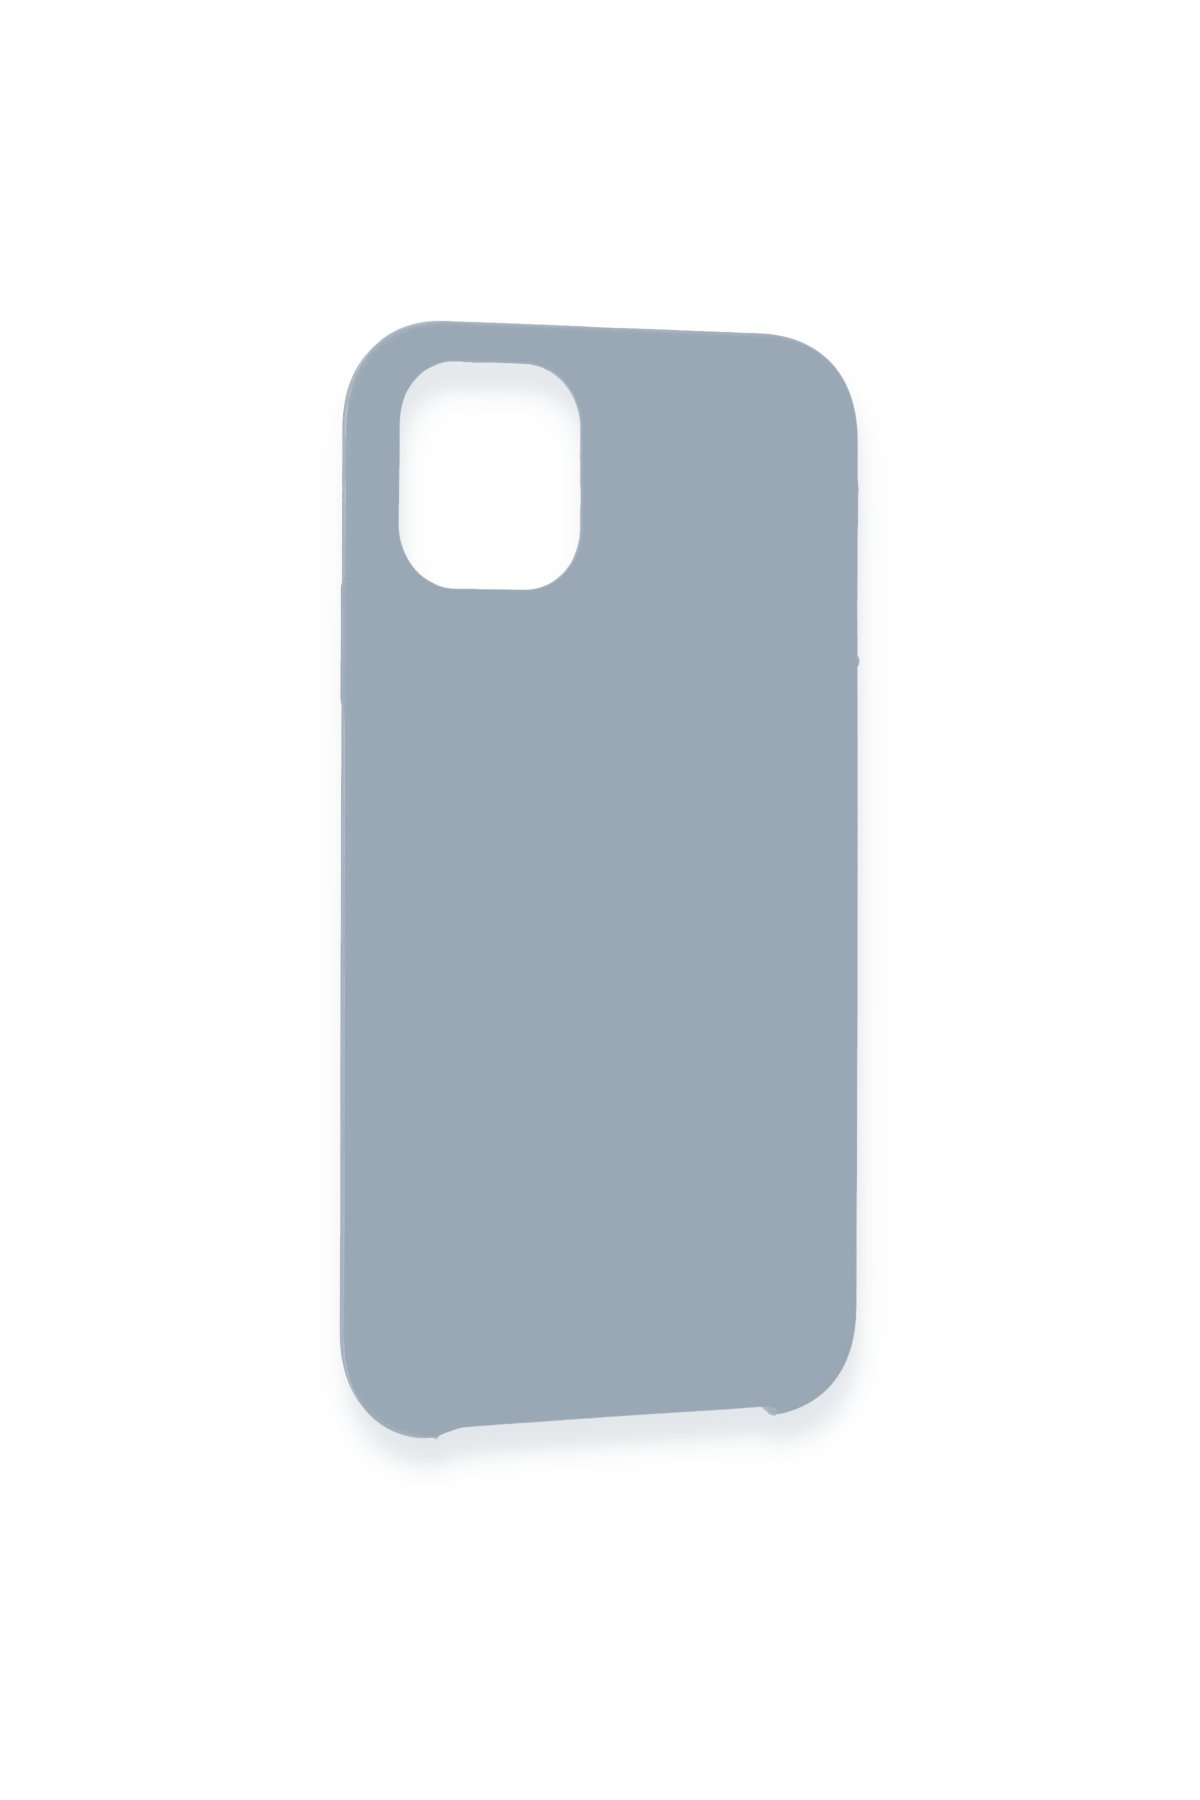 Newface iPhone 11 Pro Max Kılıf Lansman Legant Silikon - Açık Pembe